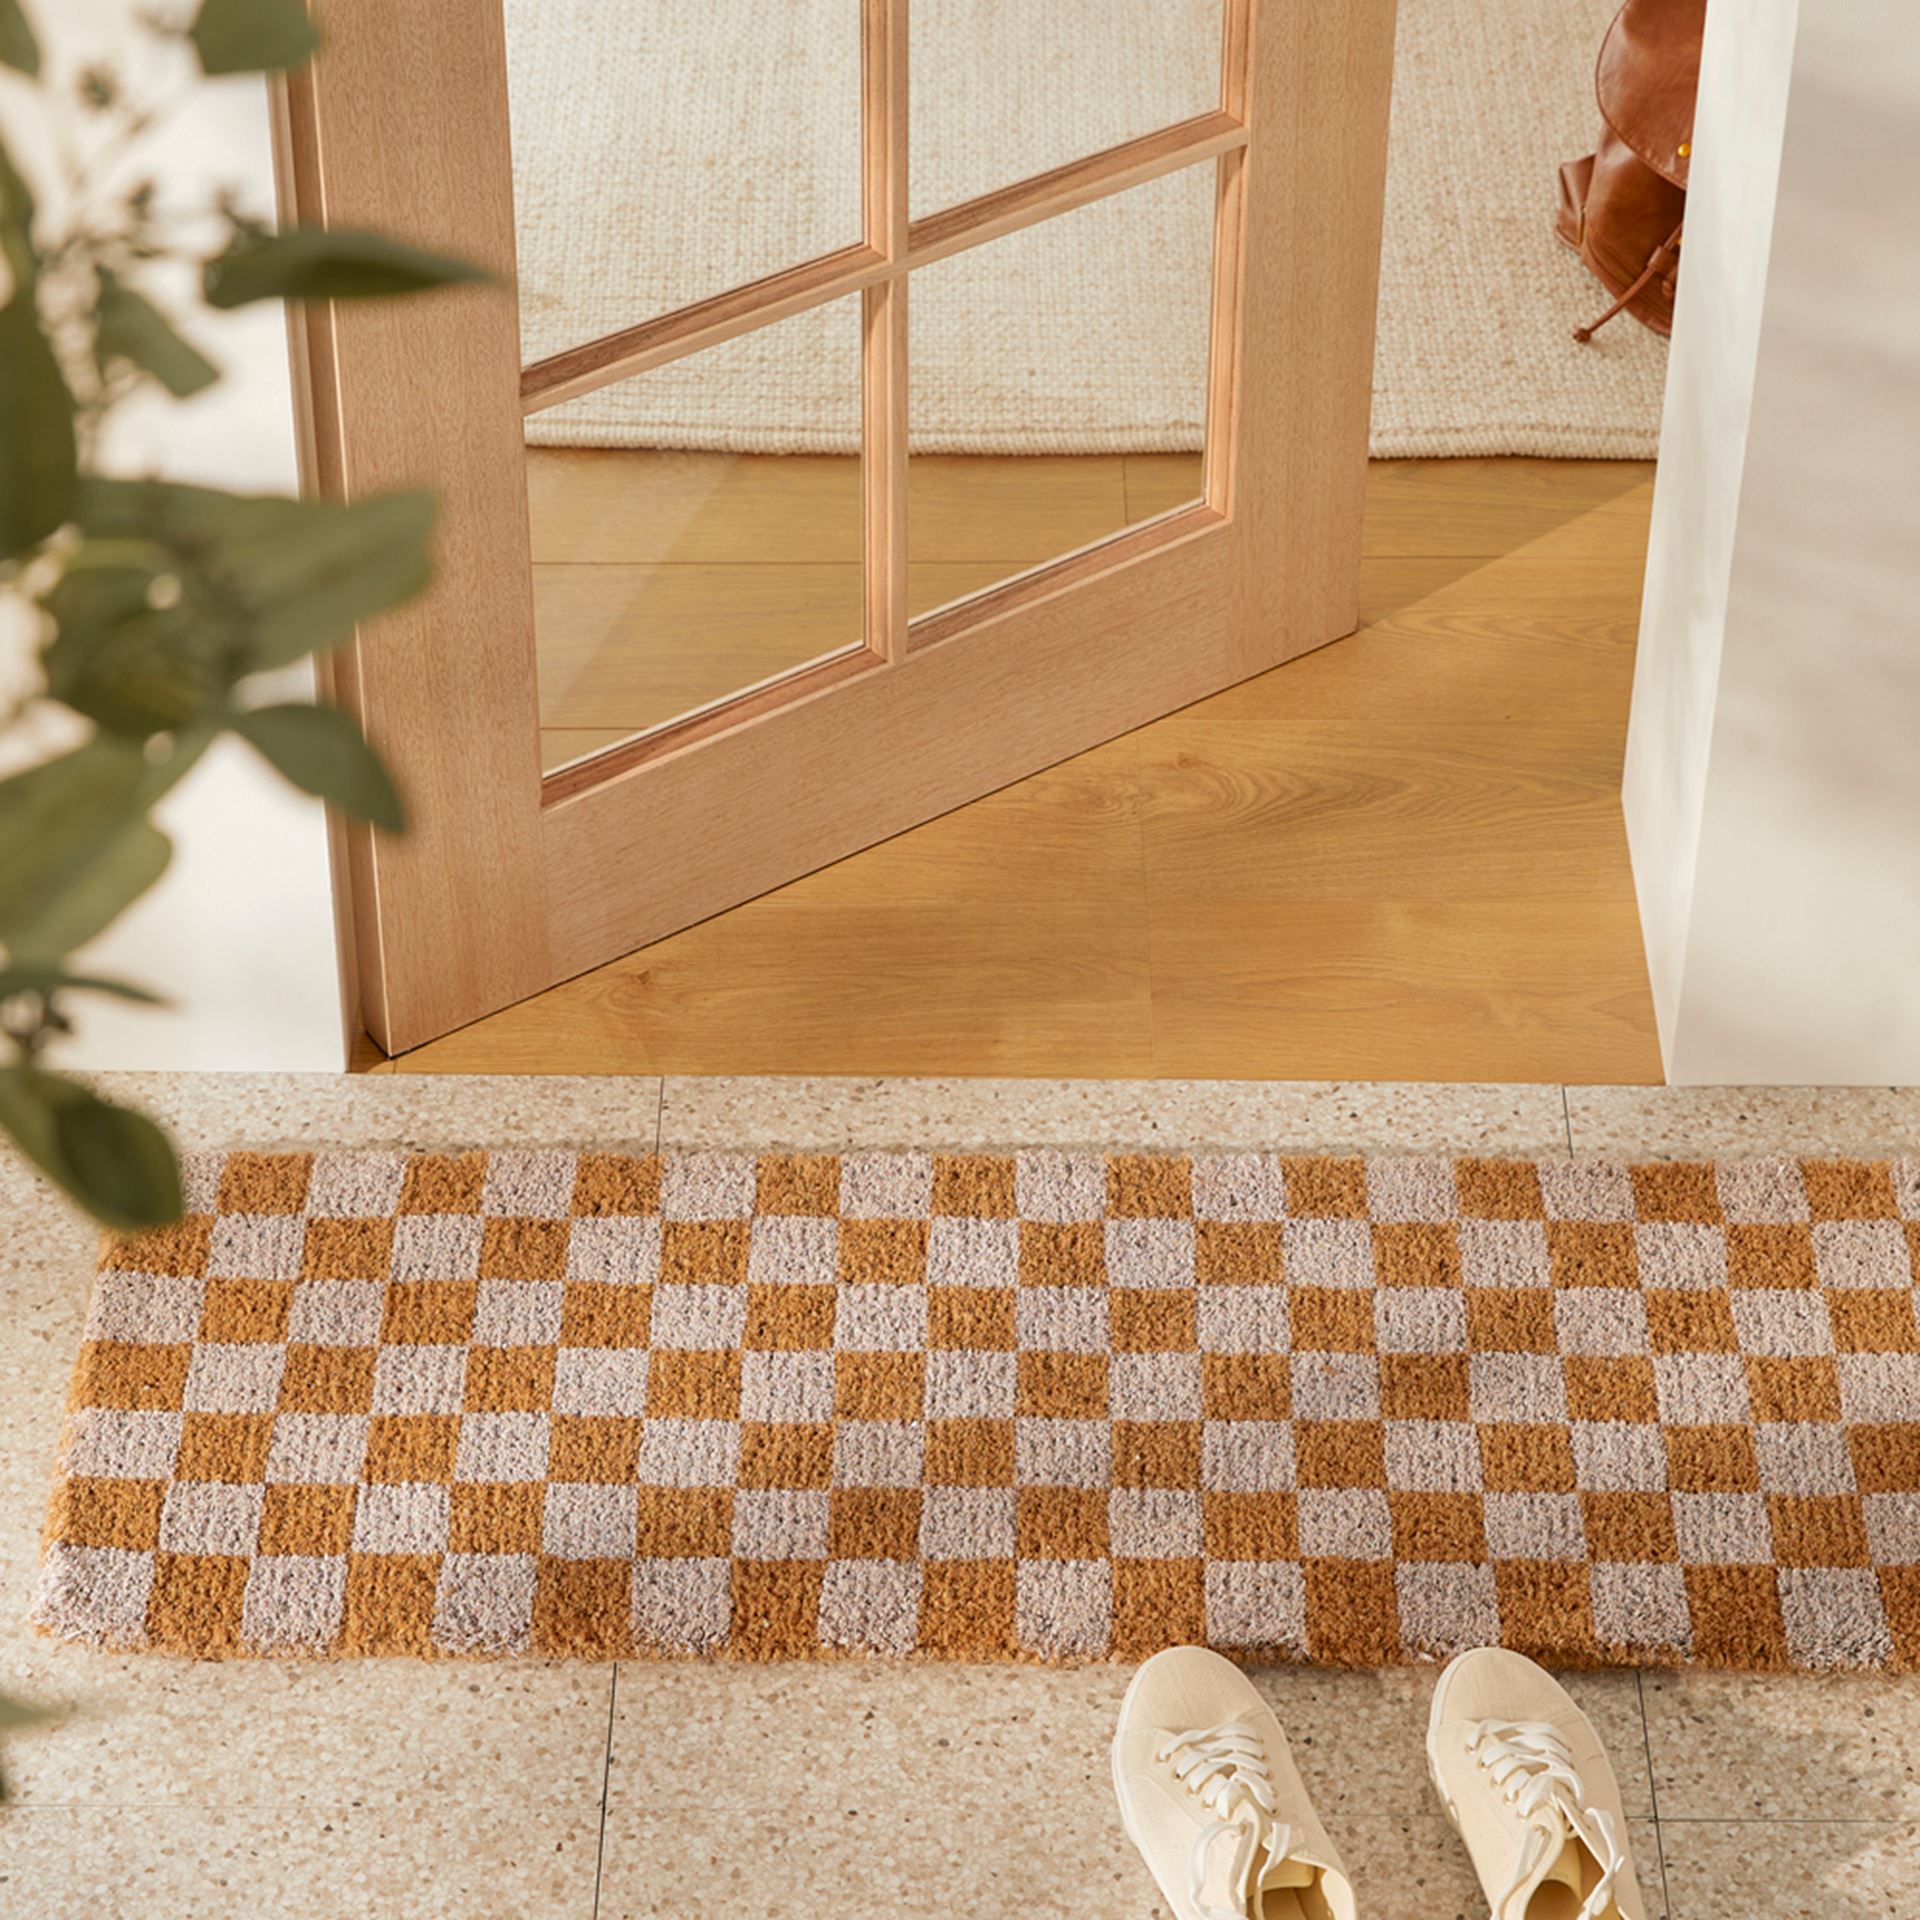 Buy Coir Doormat (White Home) in Australia 55x85cm